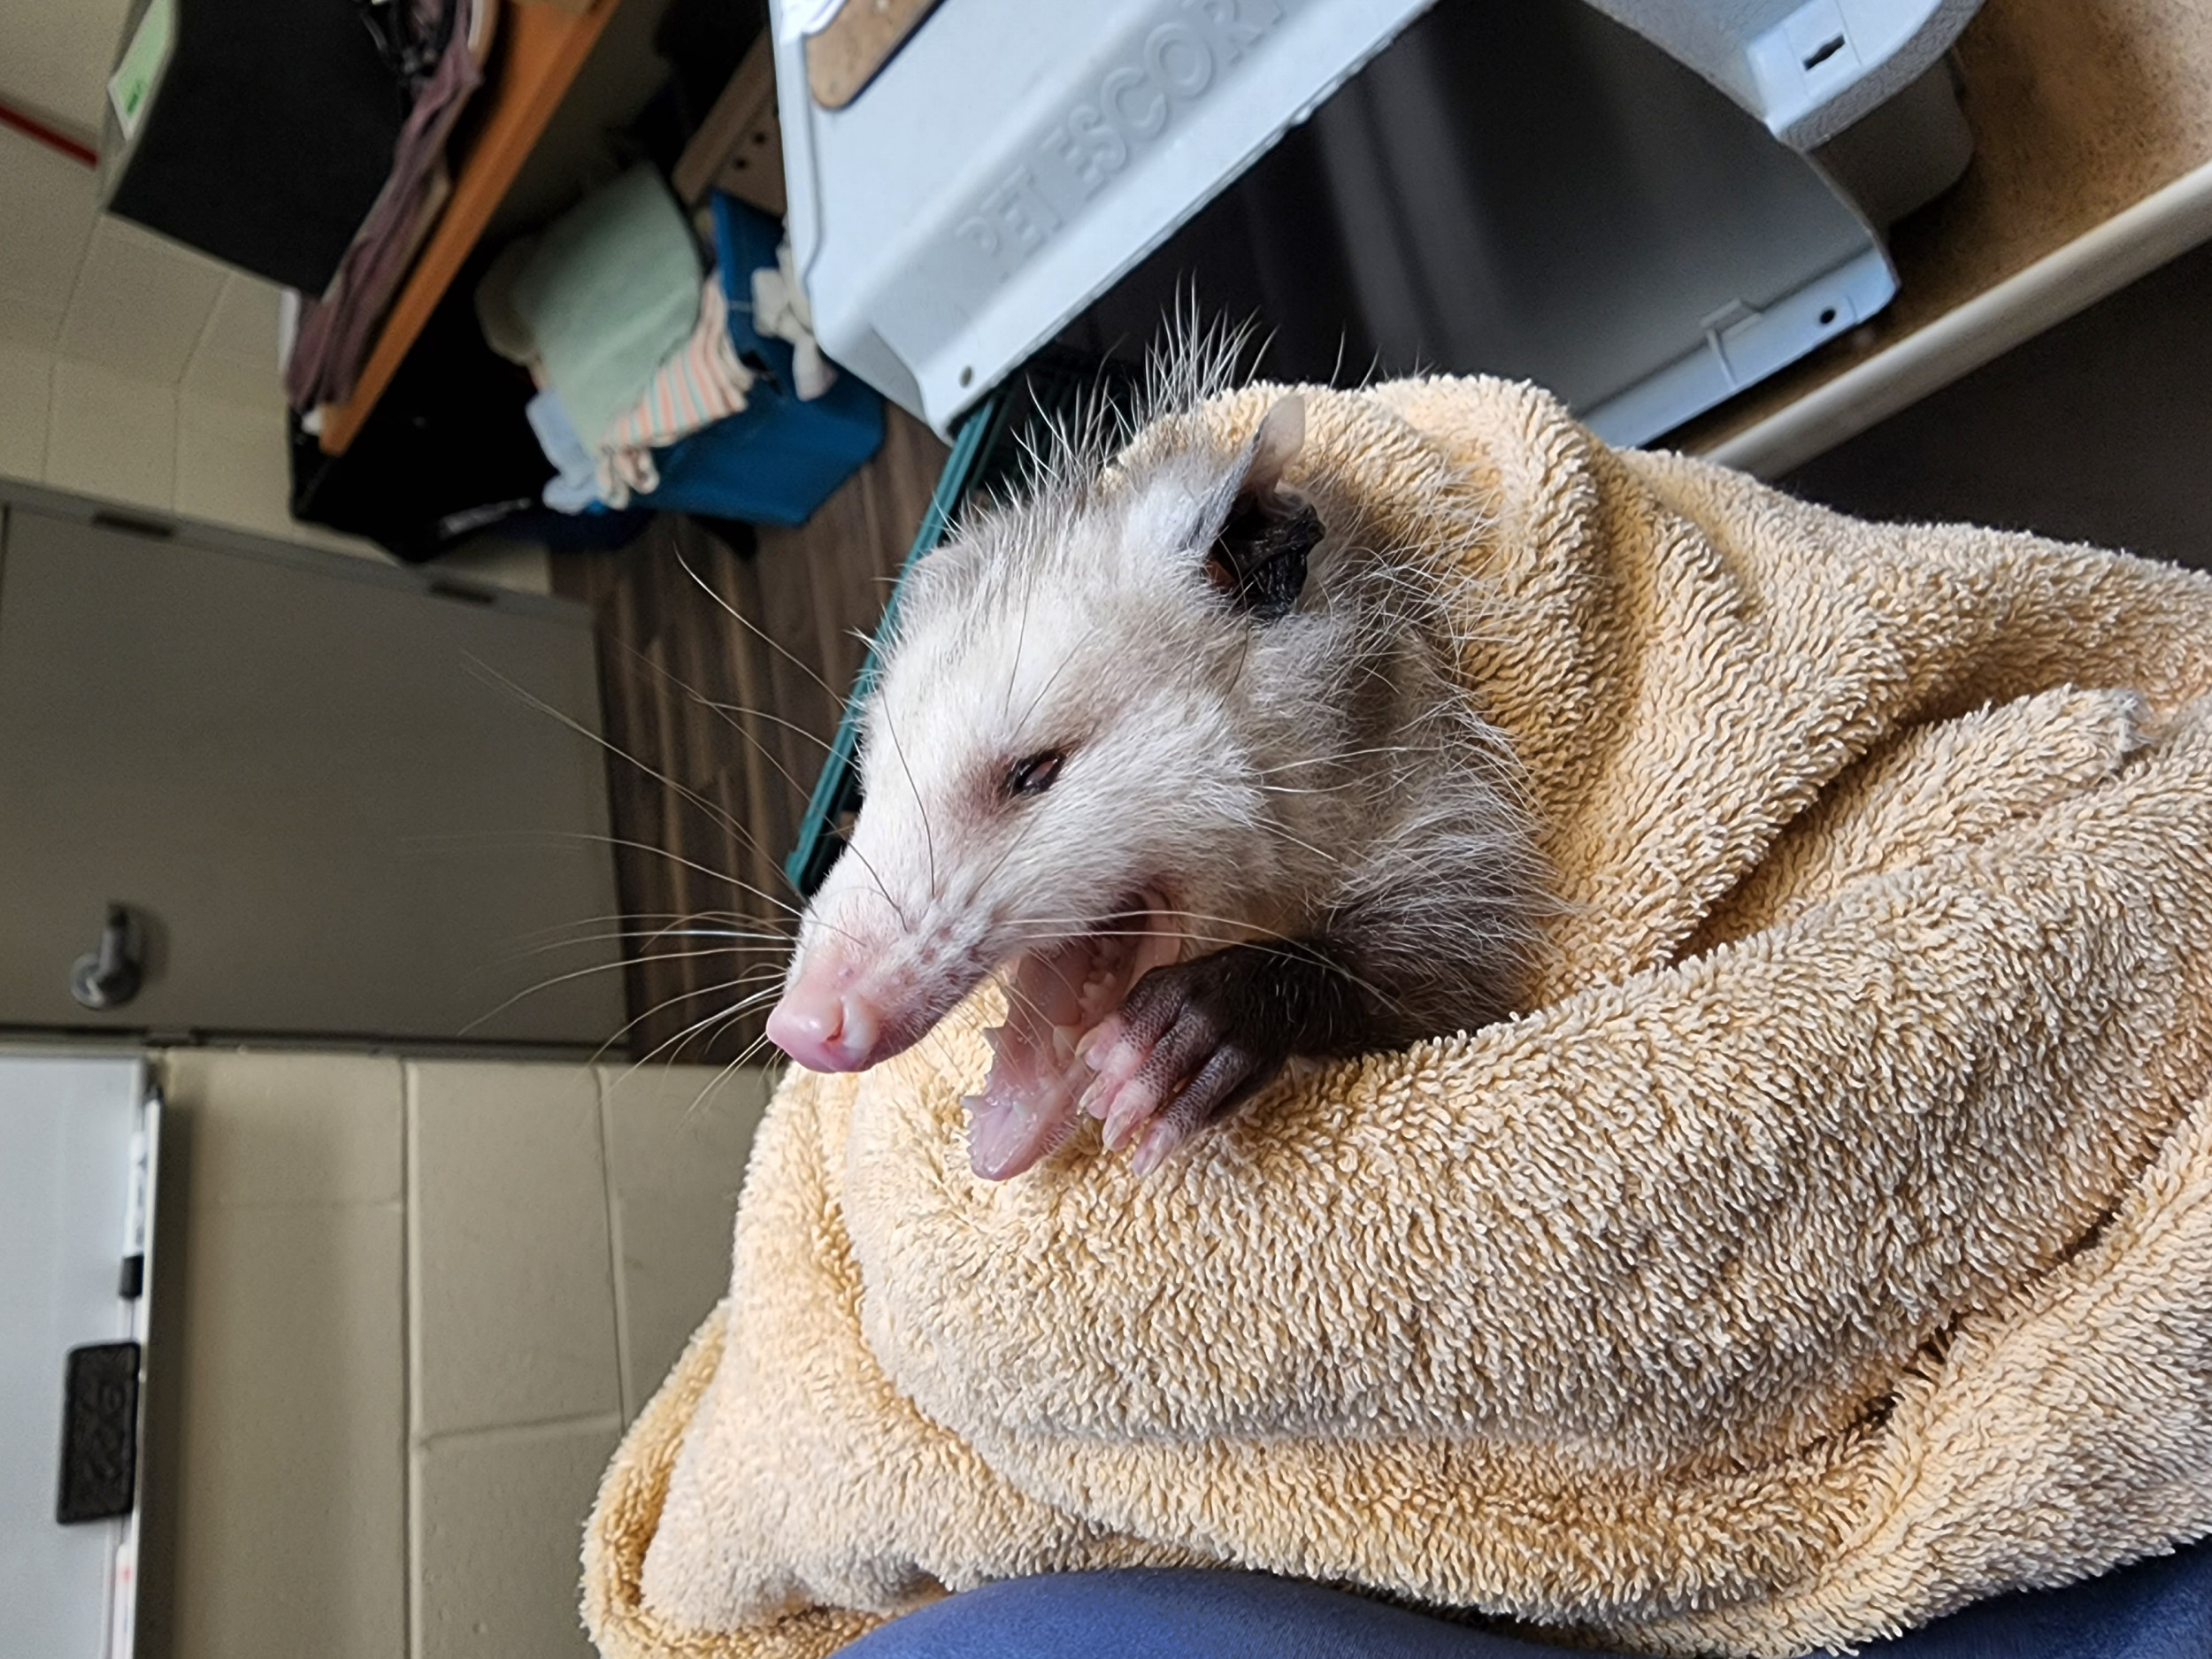 Cross-eyed opossum is huge on Facebook